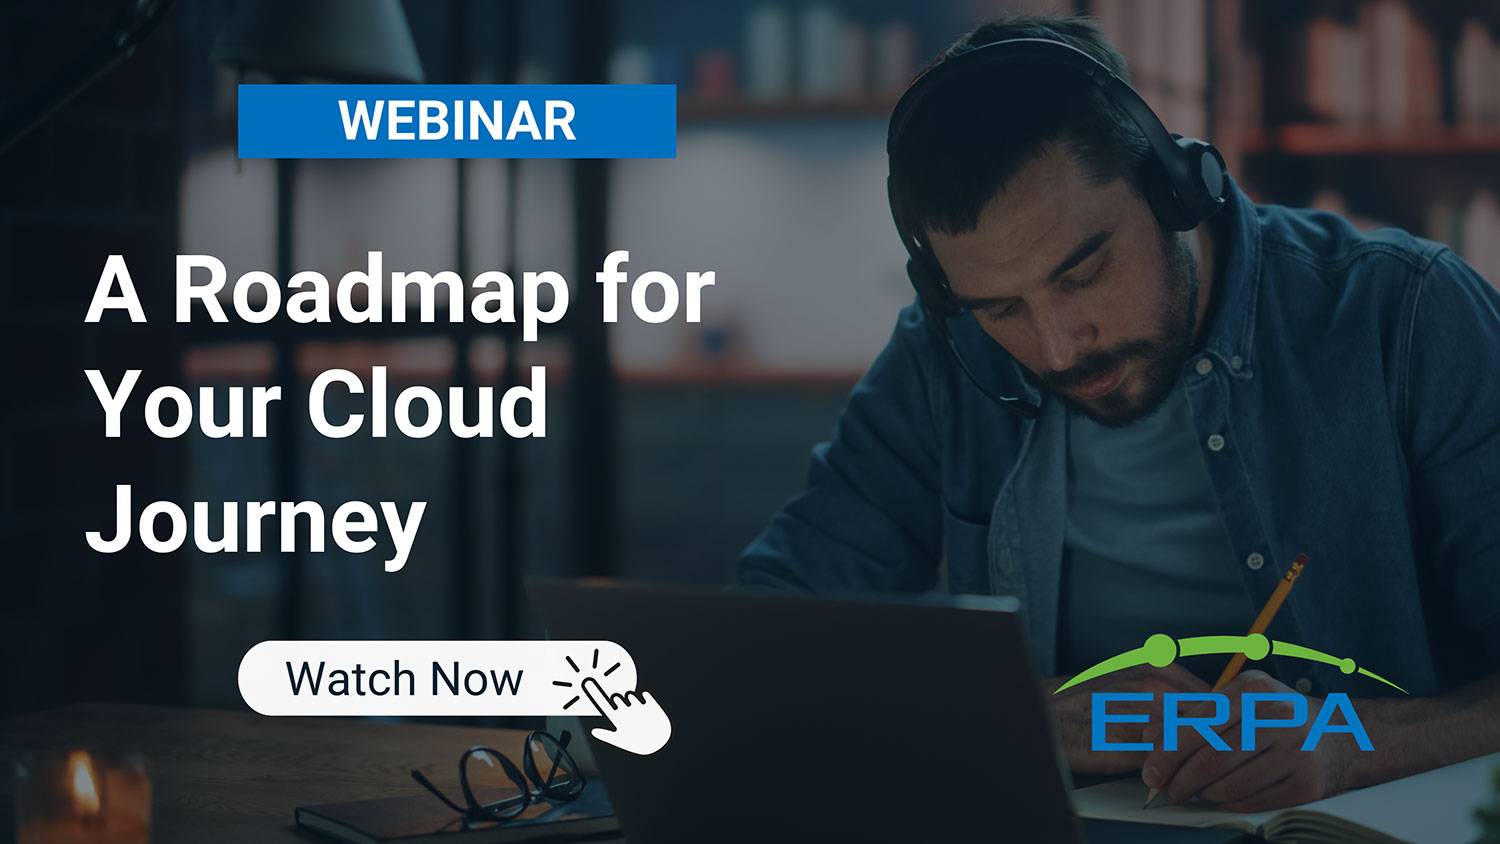 ERPA Webinar: A Roadmap for Your Cloud Journey